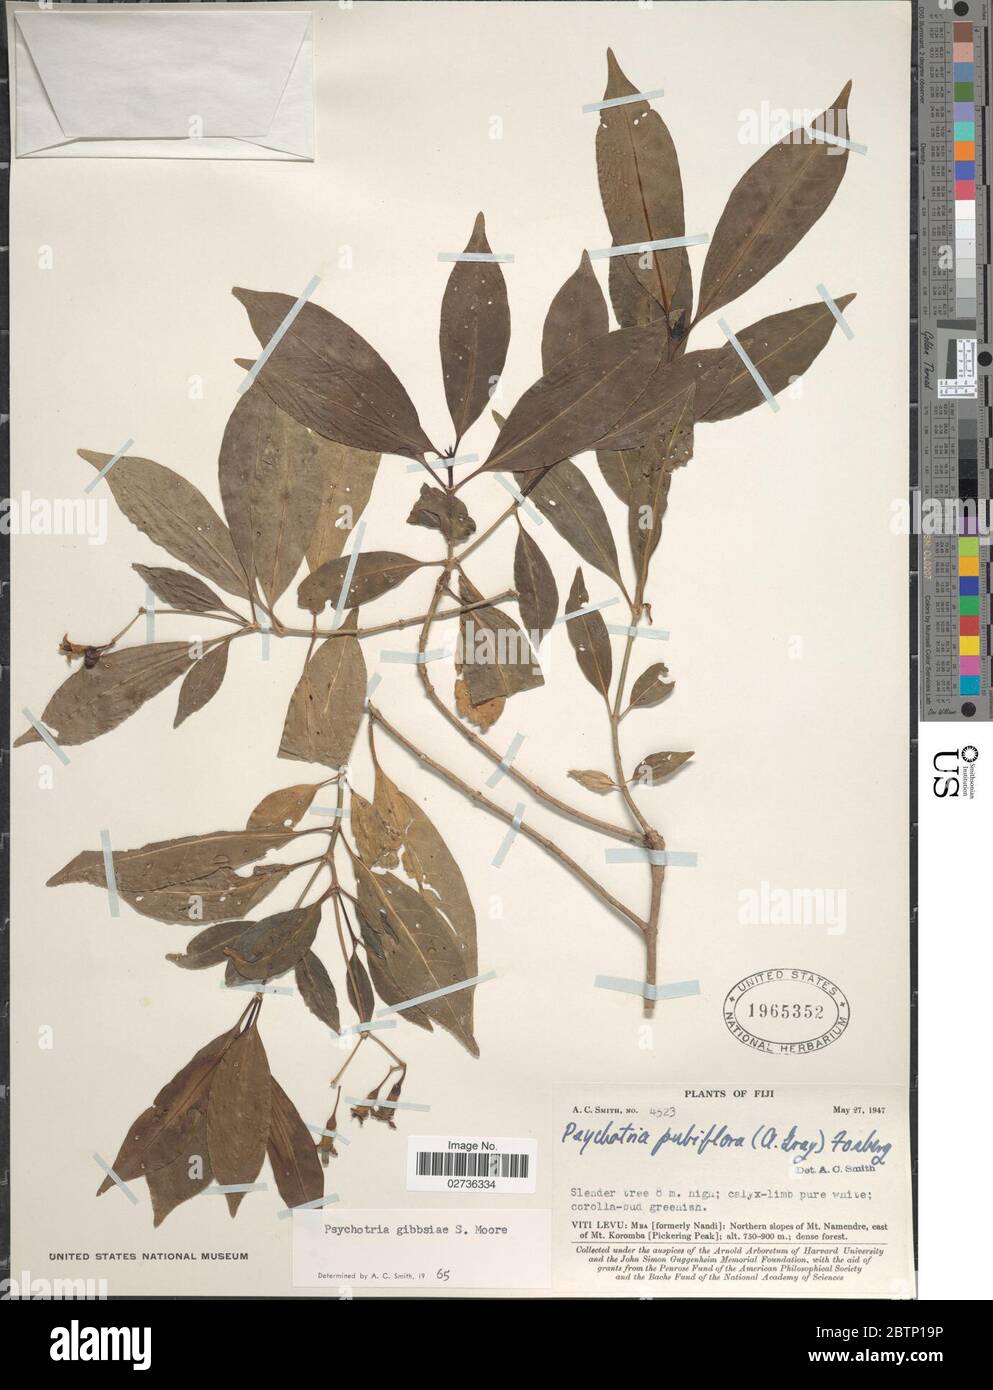 Psychotria gibbsiae S Moore. Stock Photo